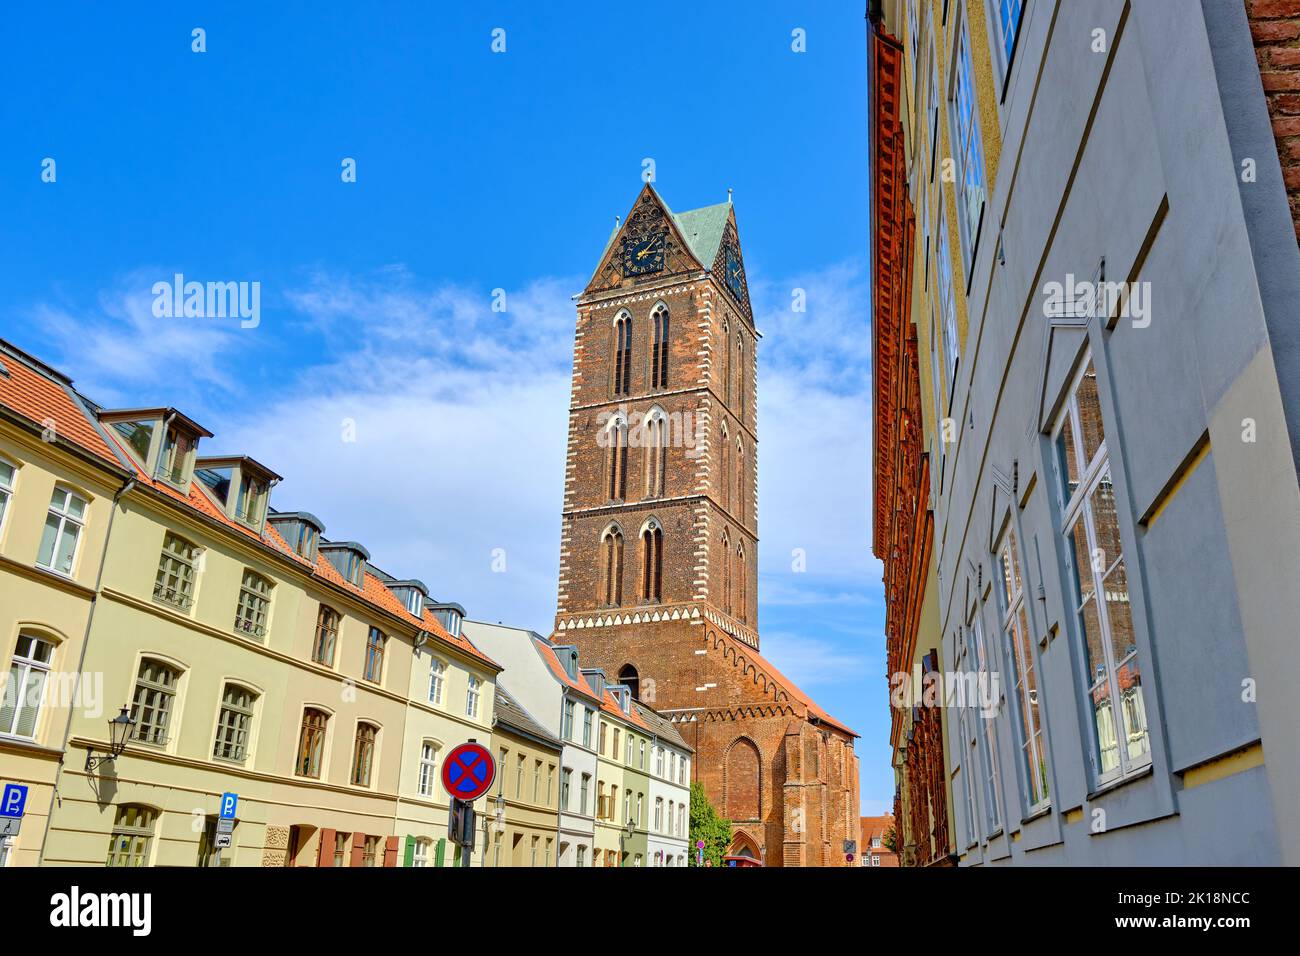 Paisaje urbano y torre y campanario de las ruinas de Marienkirche (Iglesia de Santa María), casco antiguo de la ciudad hanseática de Wismar, Alemania. Foto de stock